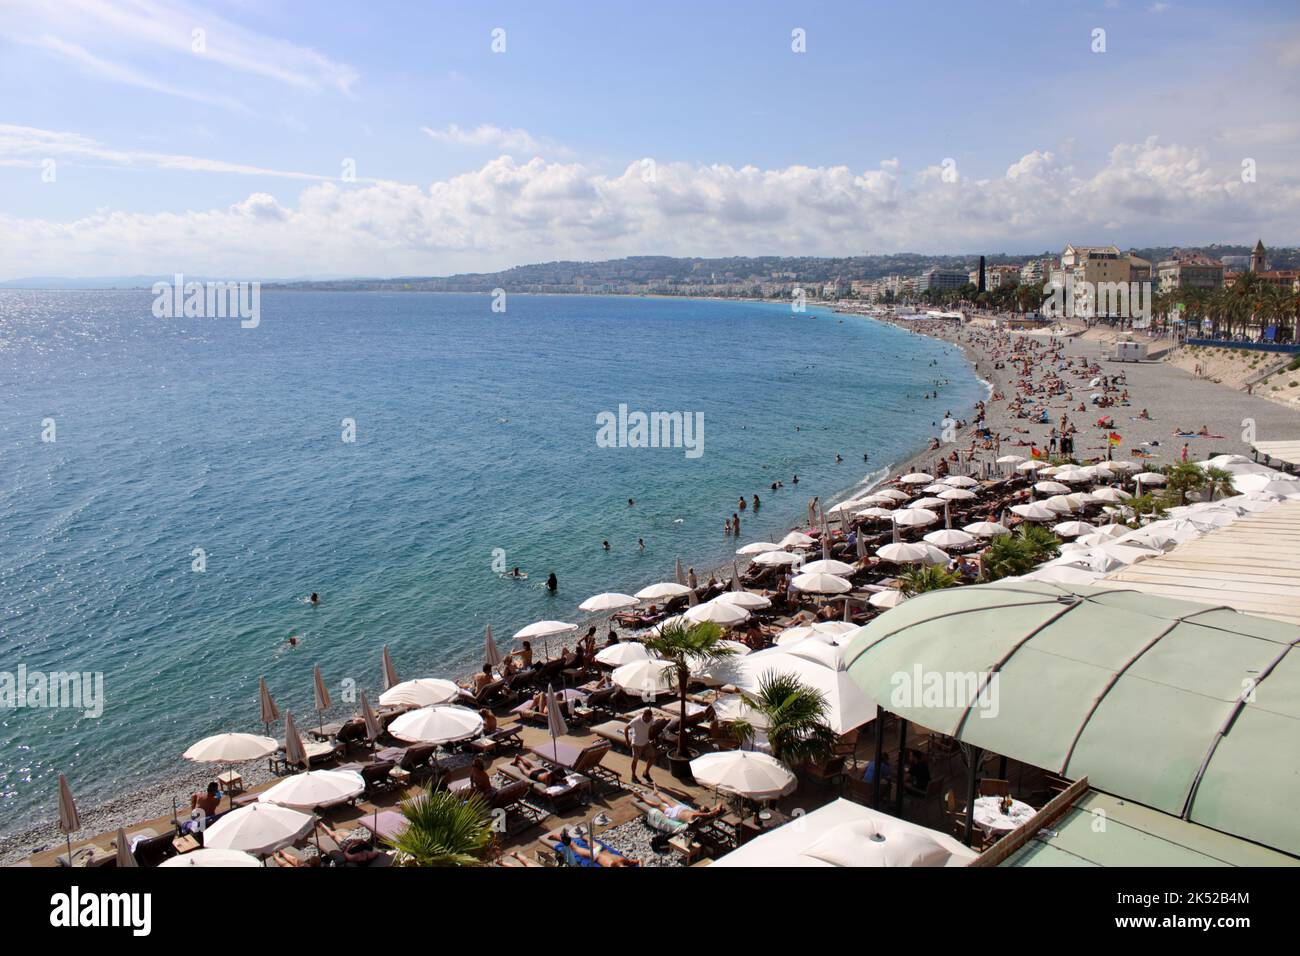 Vue sur la mer Méditerranée depuis la plage le long de la Promenade des Anglais à Nice sur la Côte d'Azur dans le Sud de la France. Banque D'Images